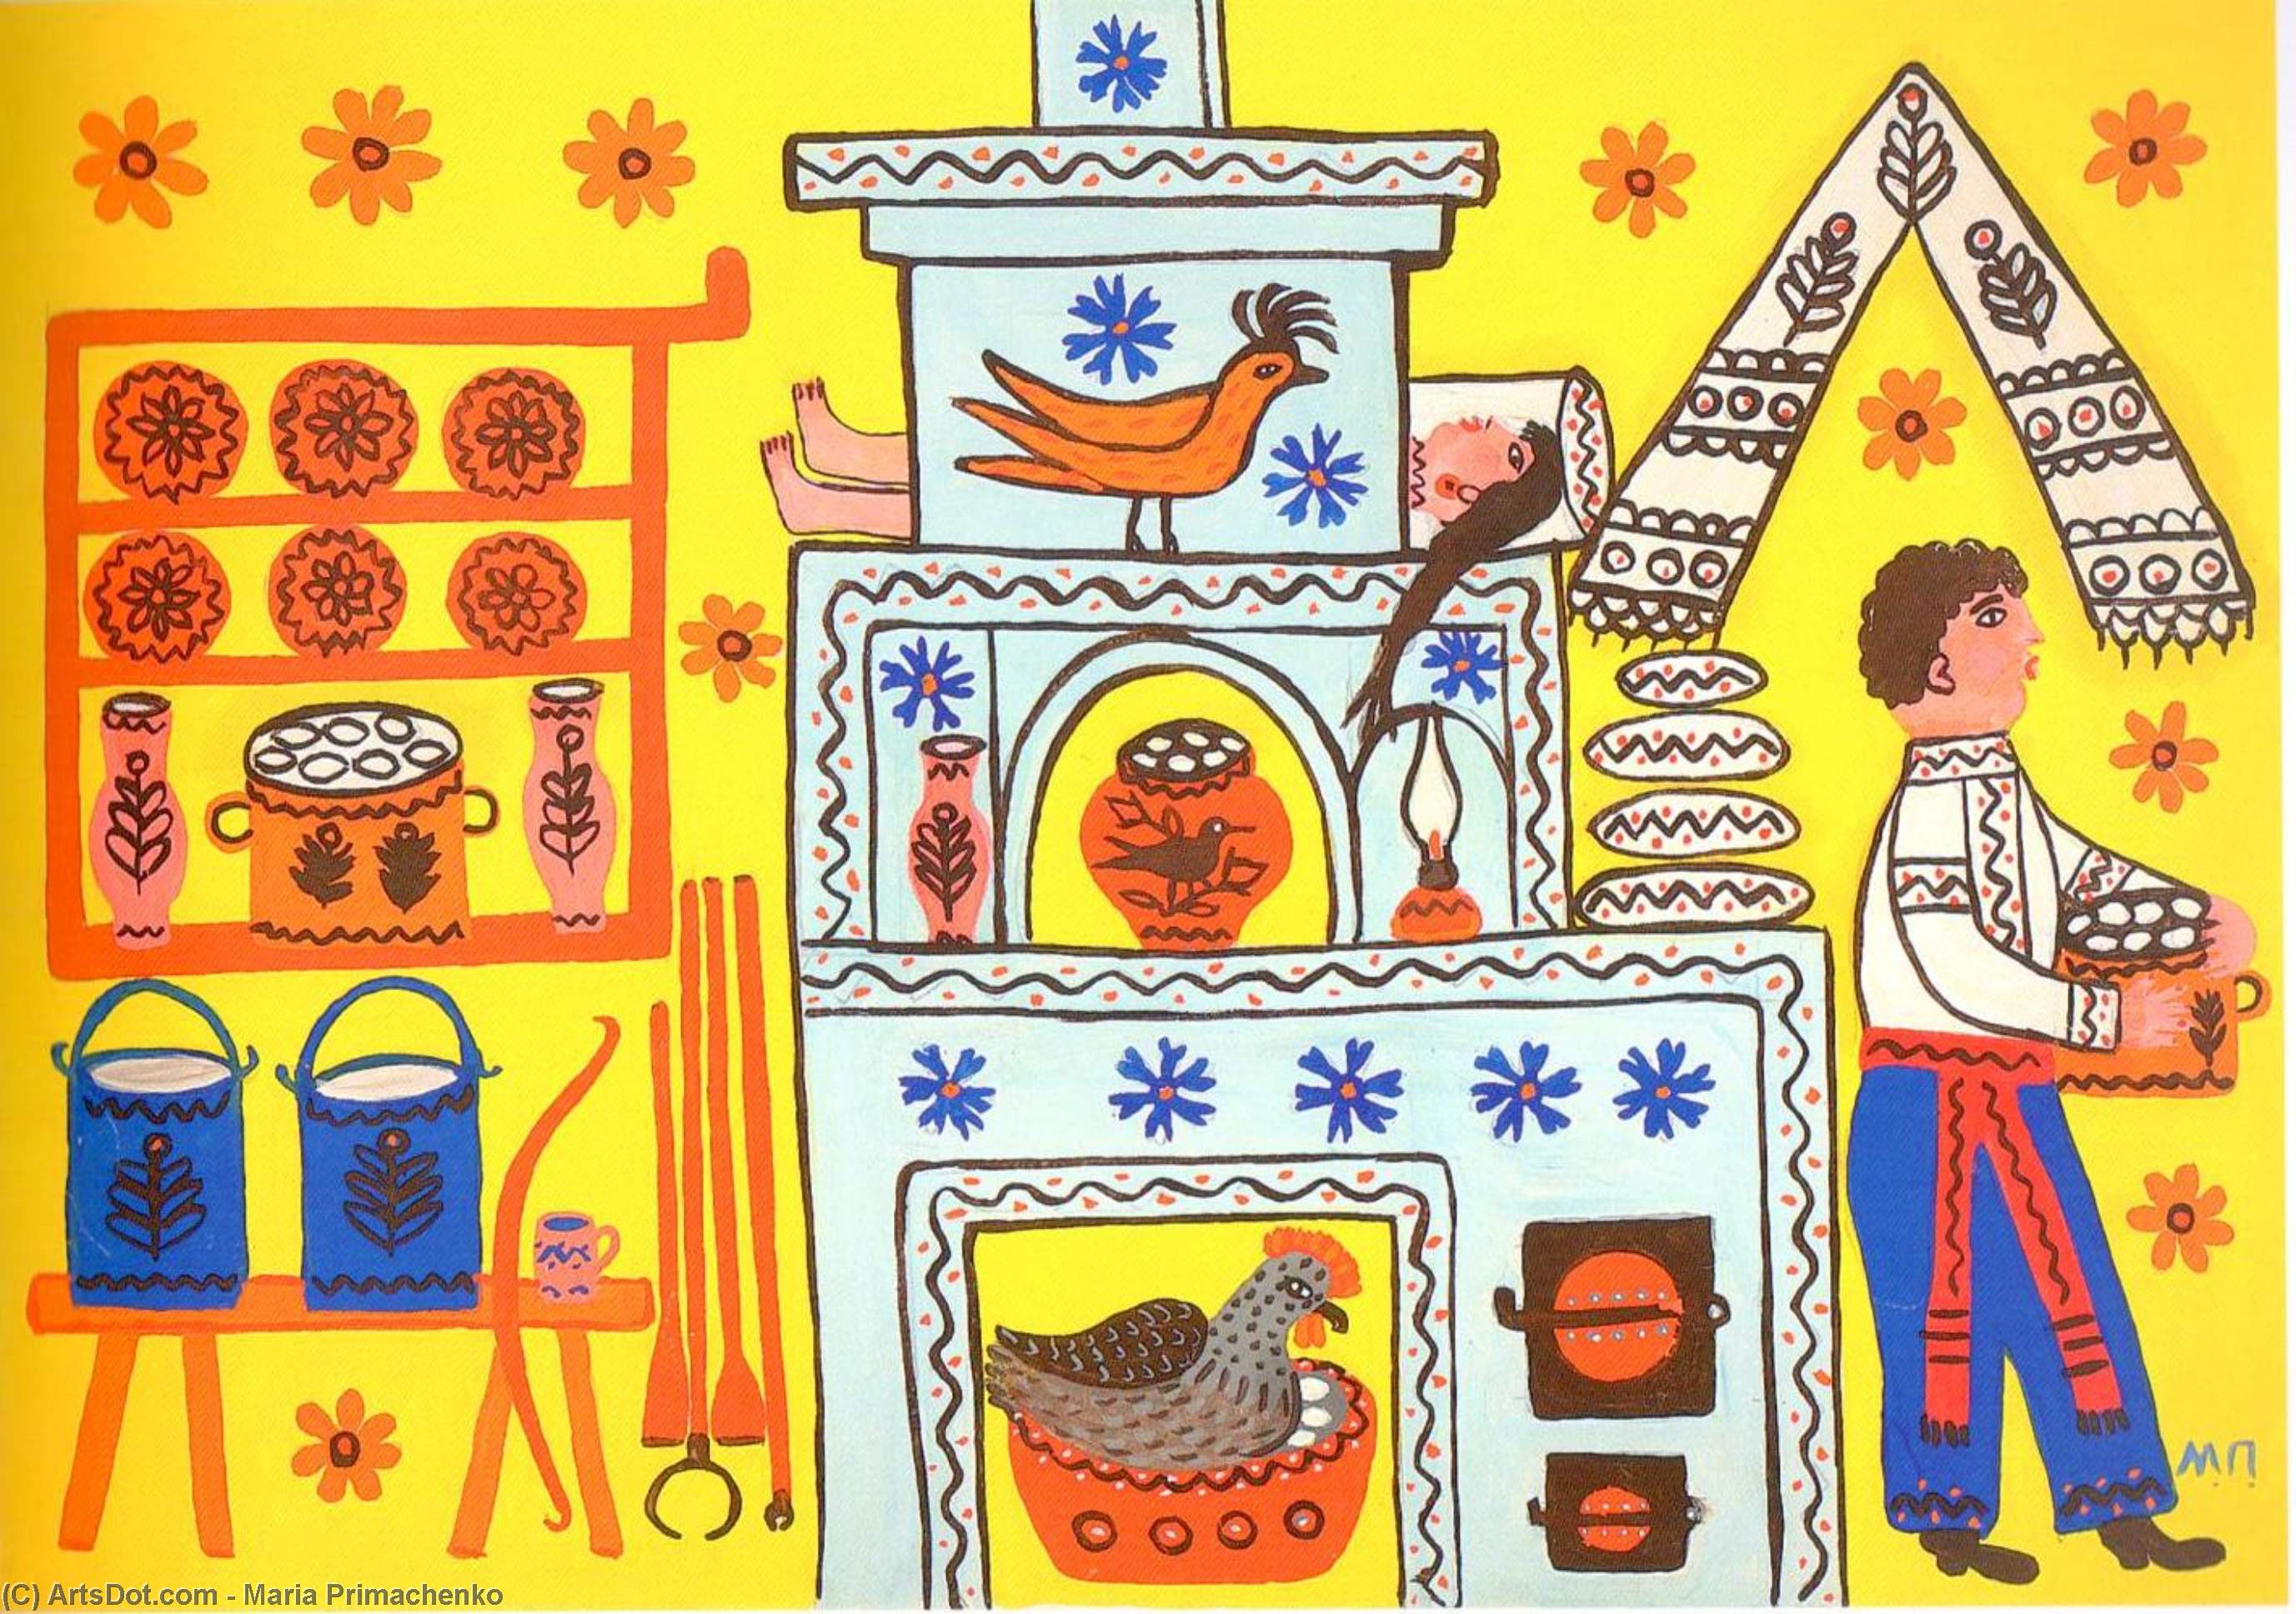 WikiOO.org - Encyclopedia of Fine Arts - Lukisan, Artwork Maria Primachenko - Dumplings on the Shelf